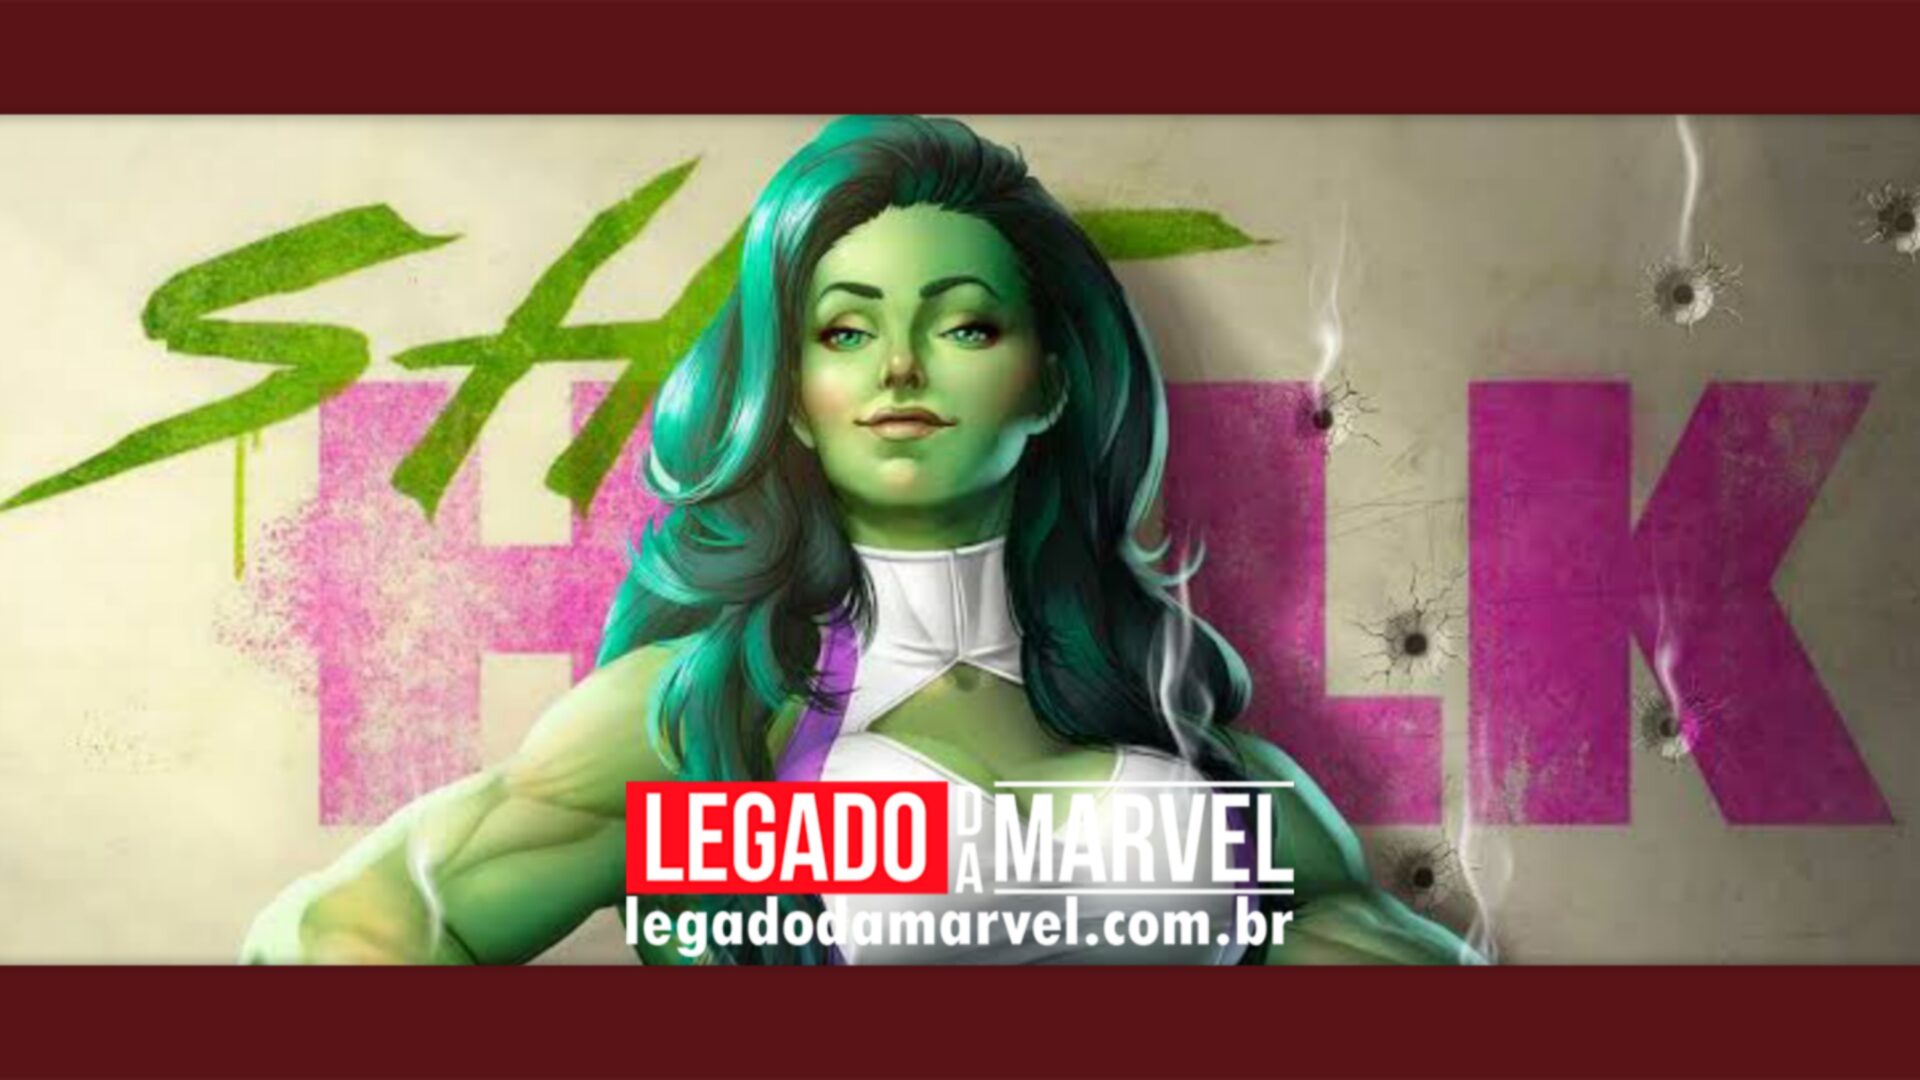  She-Hulk: Marvel divulga novo visual da heroína e os fãs amaram; confira